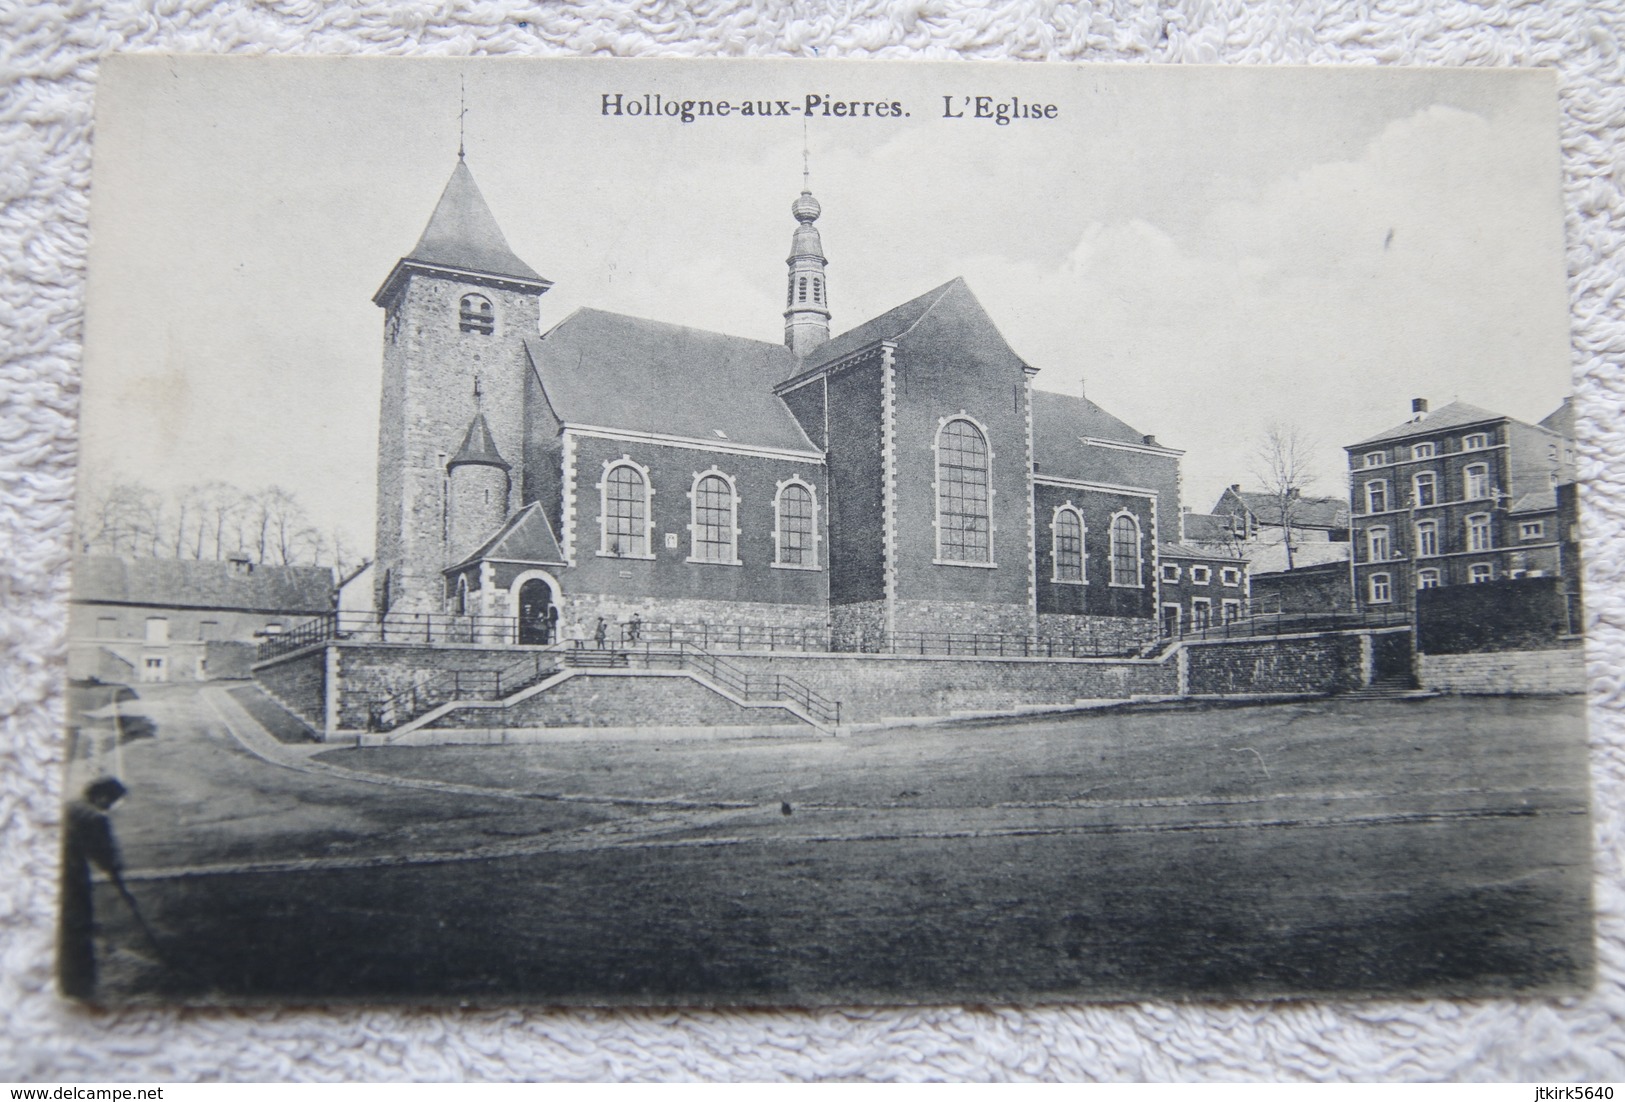 Hollogne-aux-Pierres "L'église" - Grace-Hollogne